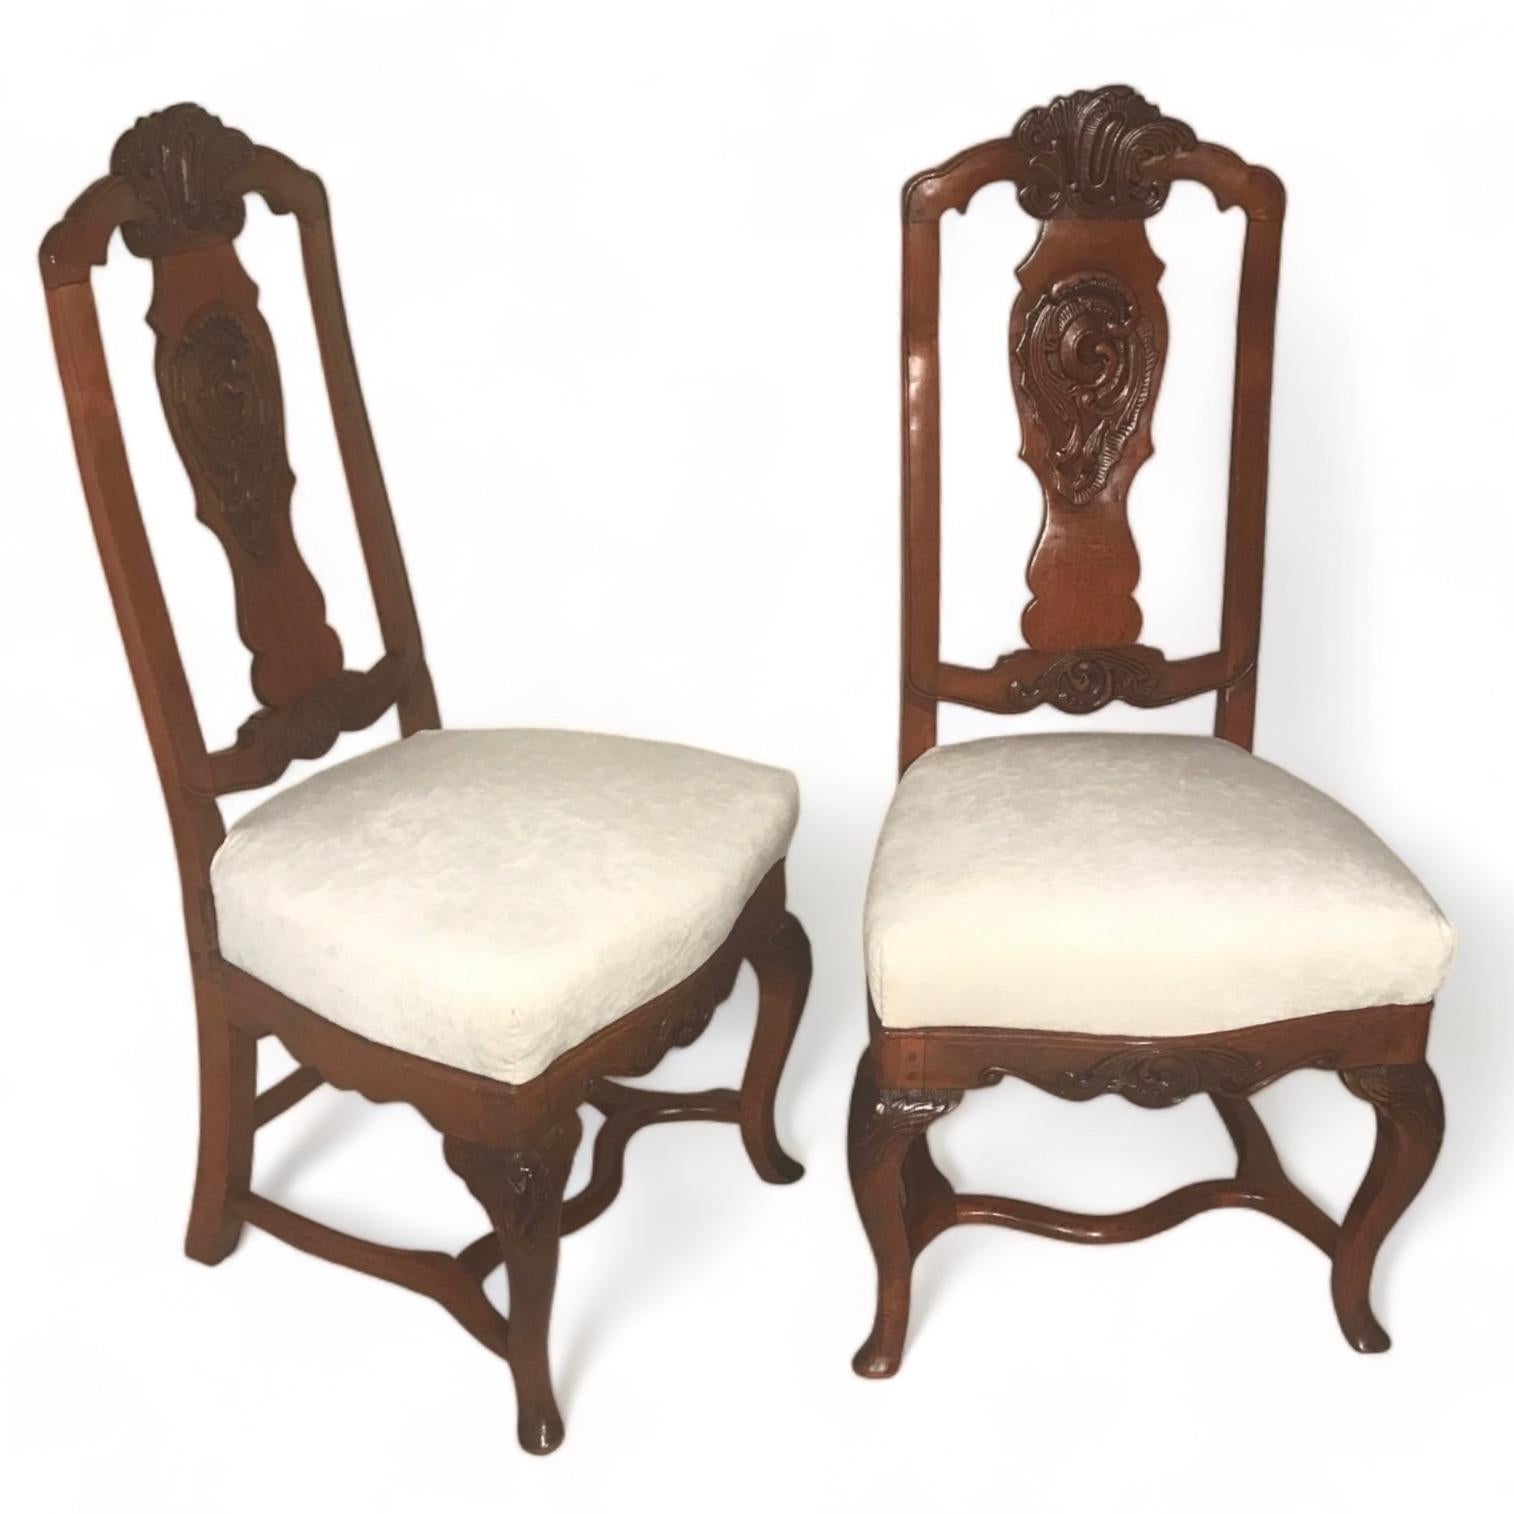 Cet ensemble de six chaises baroques originales date d'environ 1750-60 et provient du sud de l'Allemagne. Ces chaises baroques originales sont une rareté. Ils présentent un magnifique décor sculpté de rocailles et de feuilles d'acanthe sur le haut